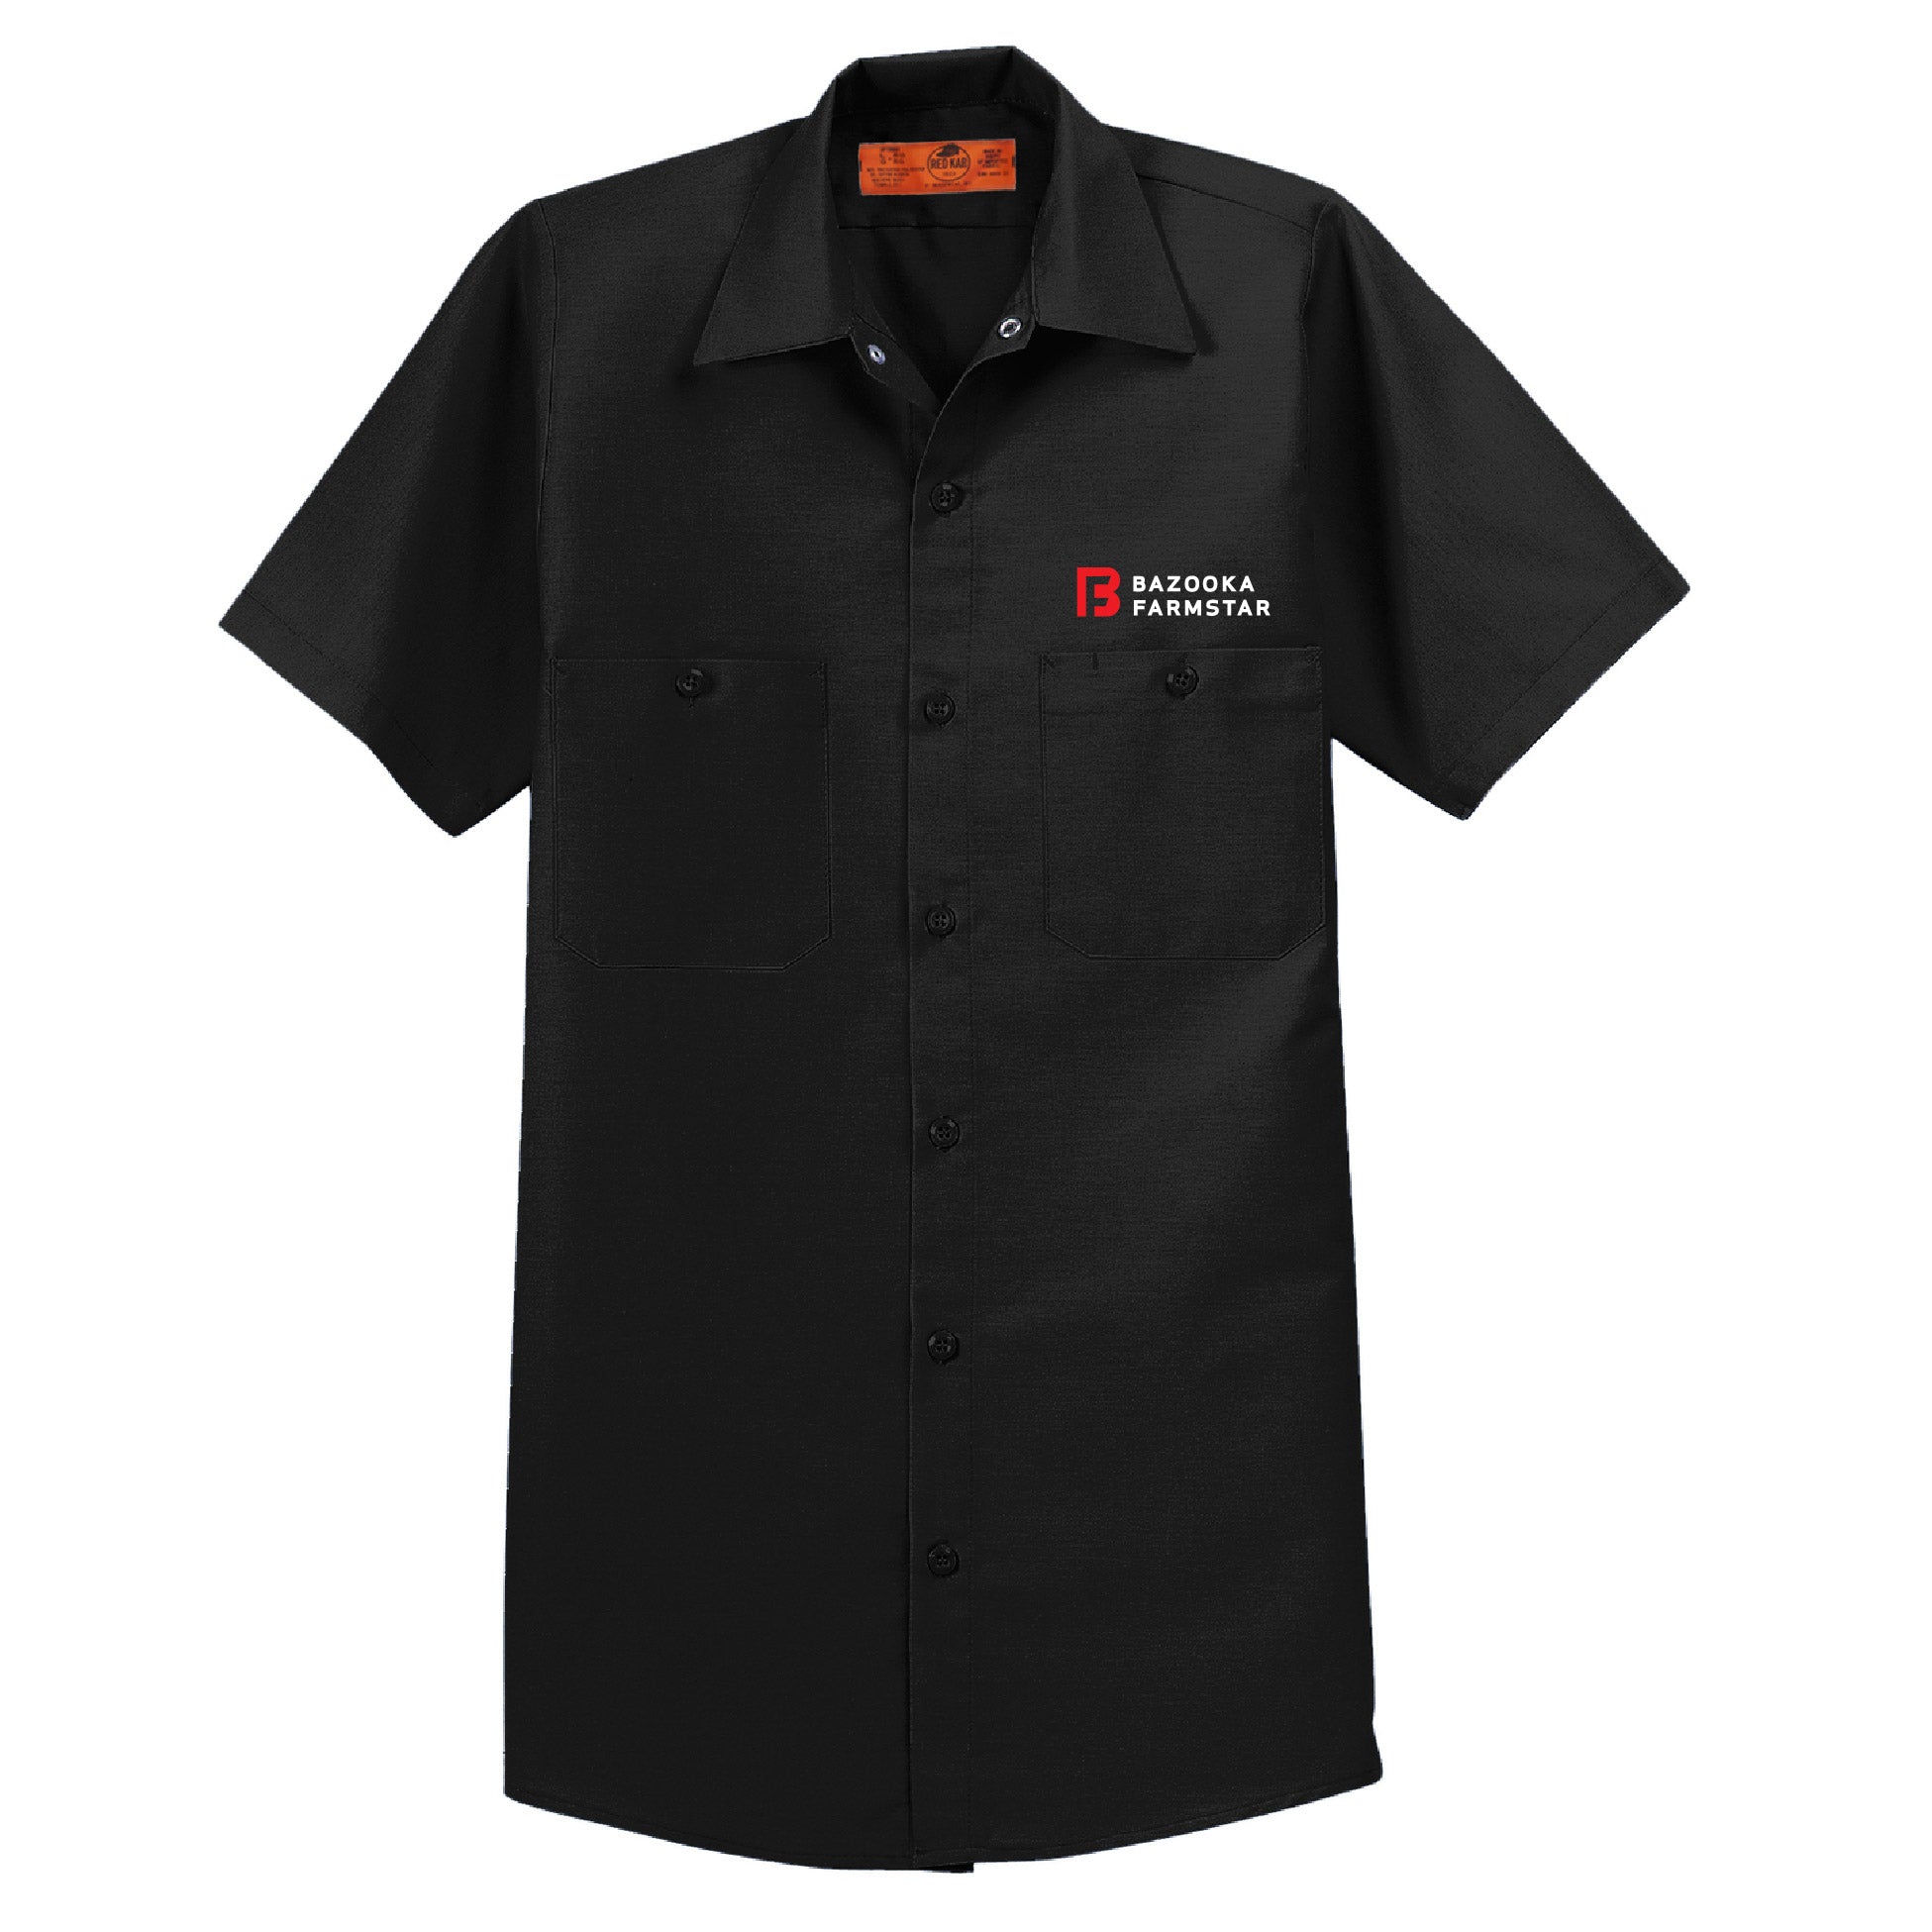 Bazooka Farmstar Short Sleeve Industrial Work Shirt